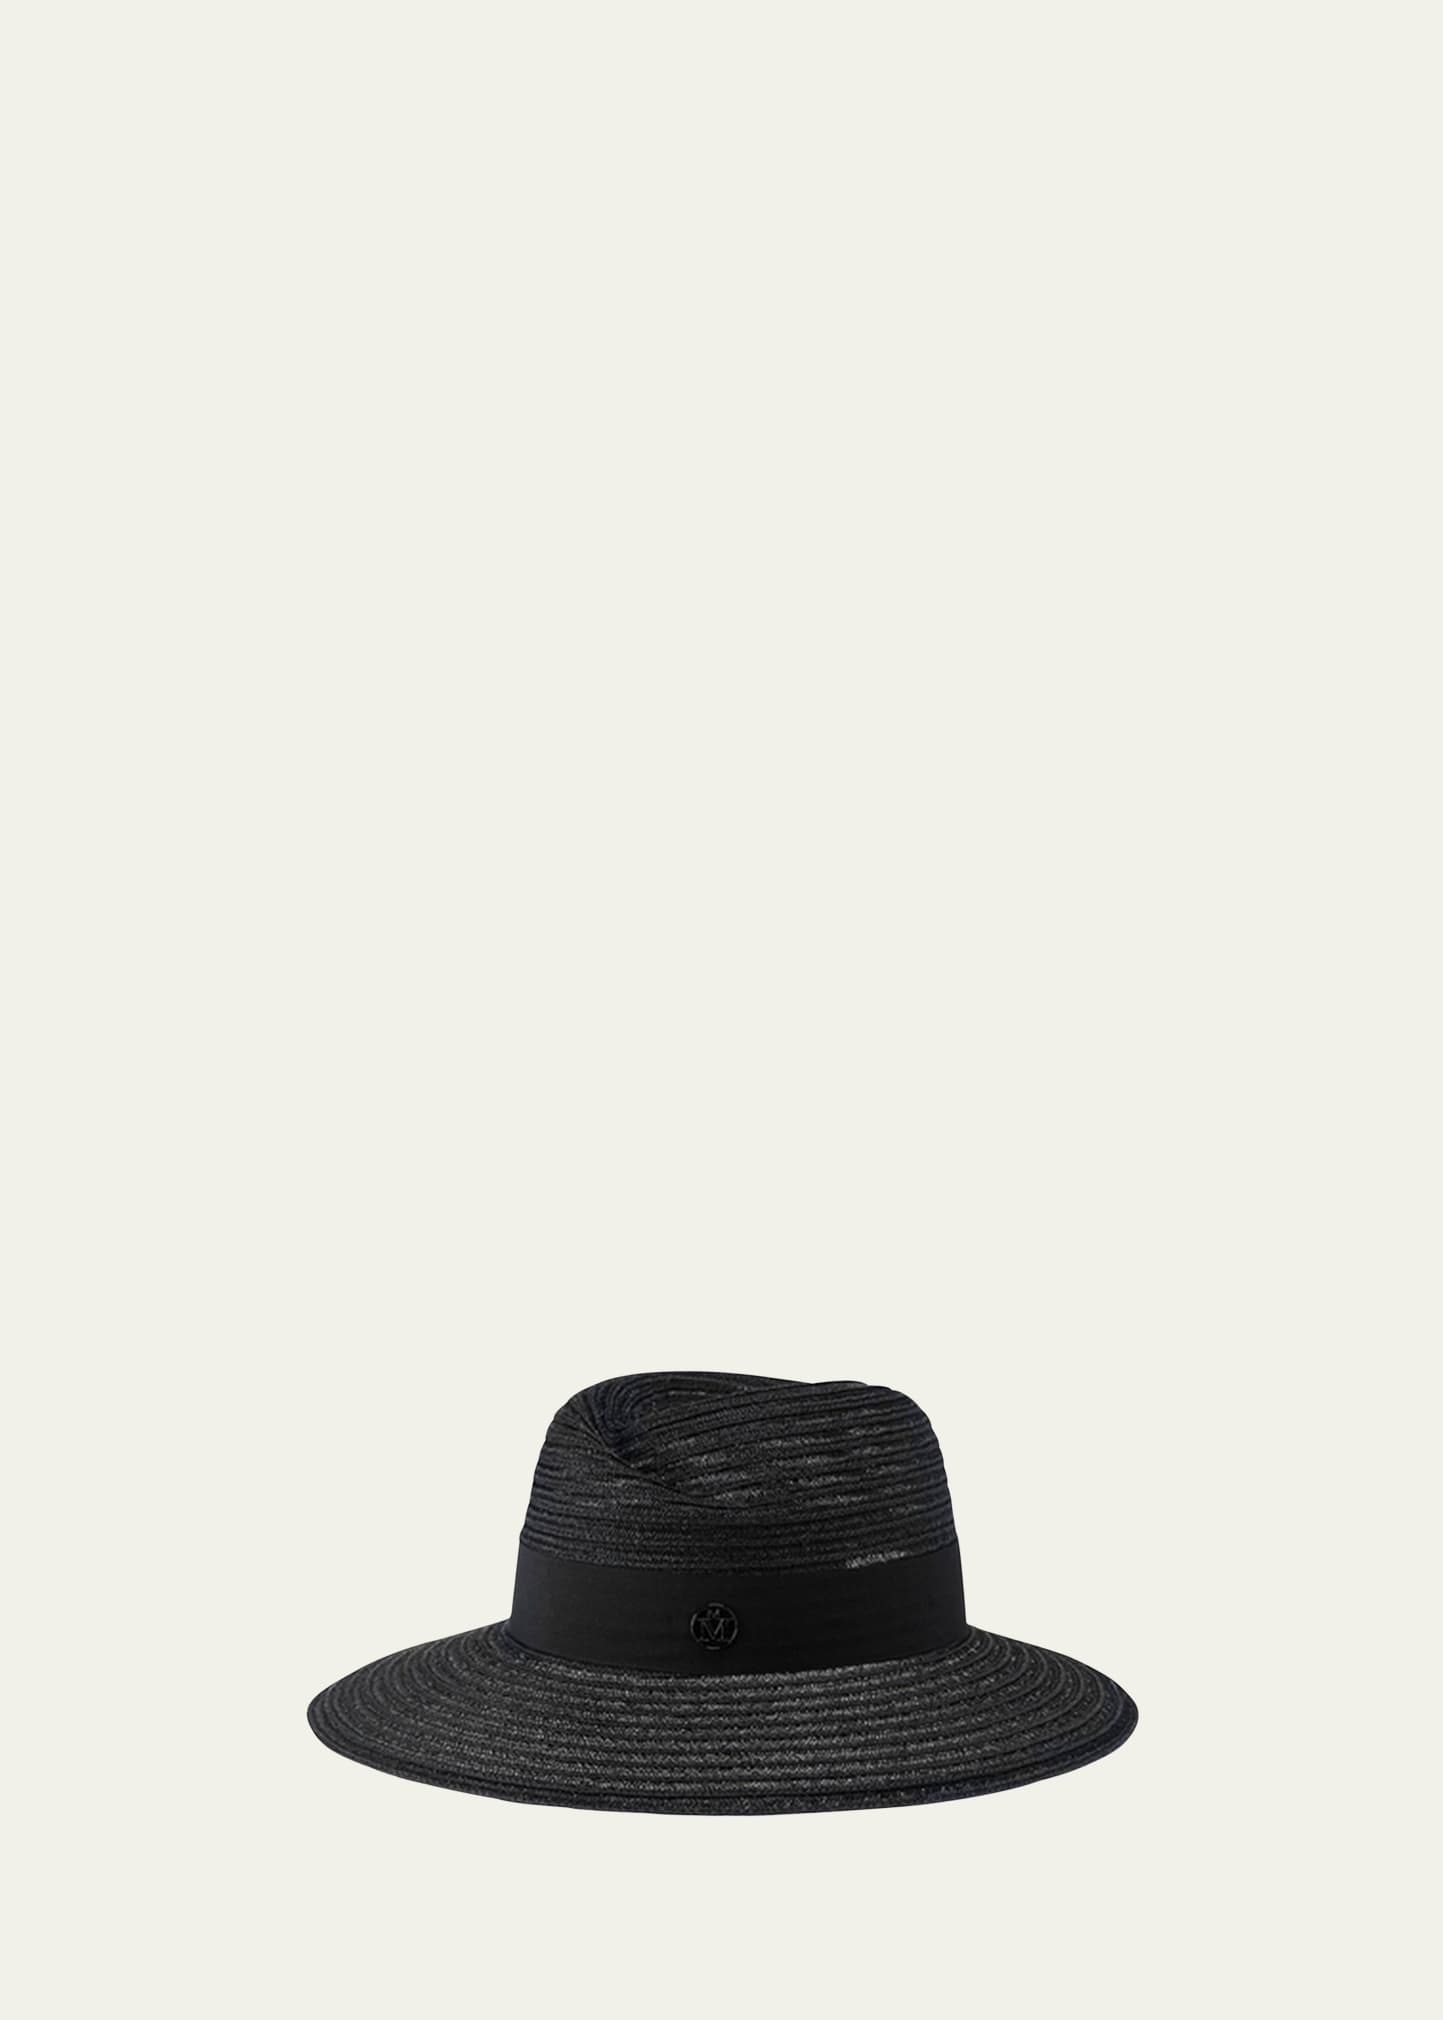 MAISON MICHEL VIRGINIE TIMELESS WIDE-BRIM STRAW HAT, BLACK